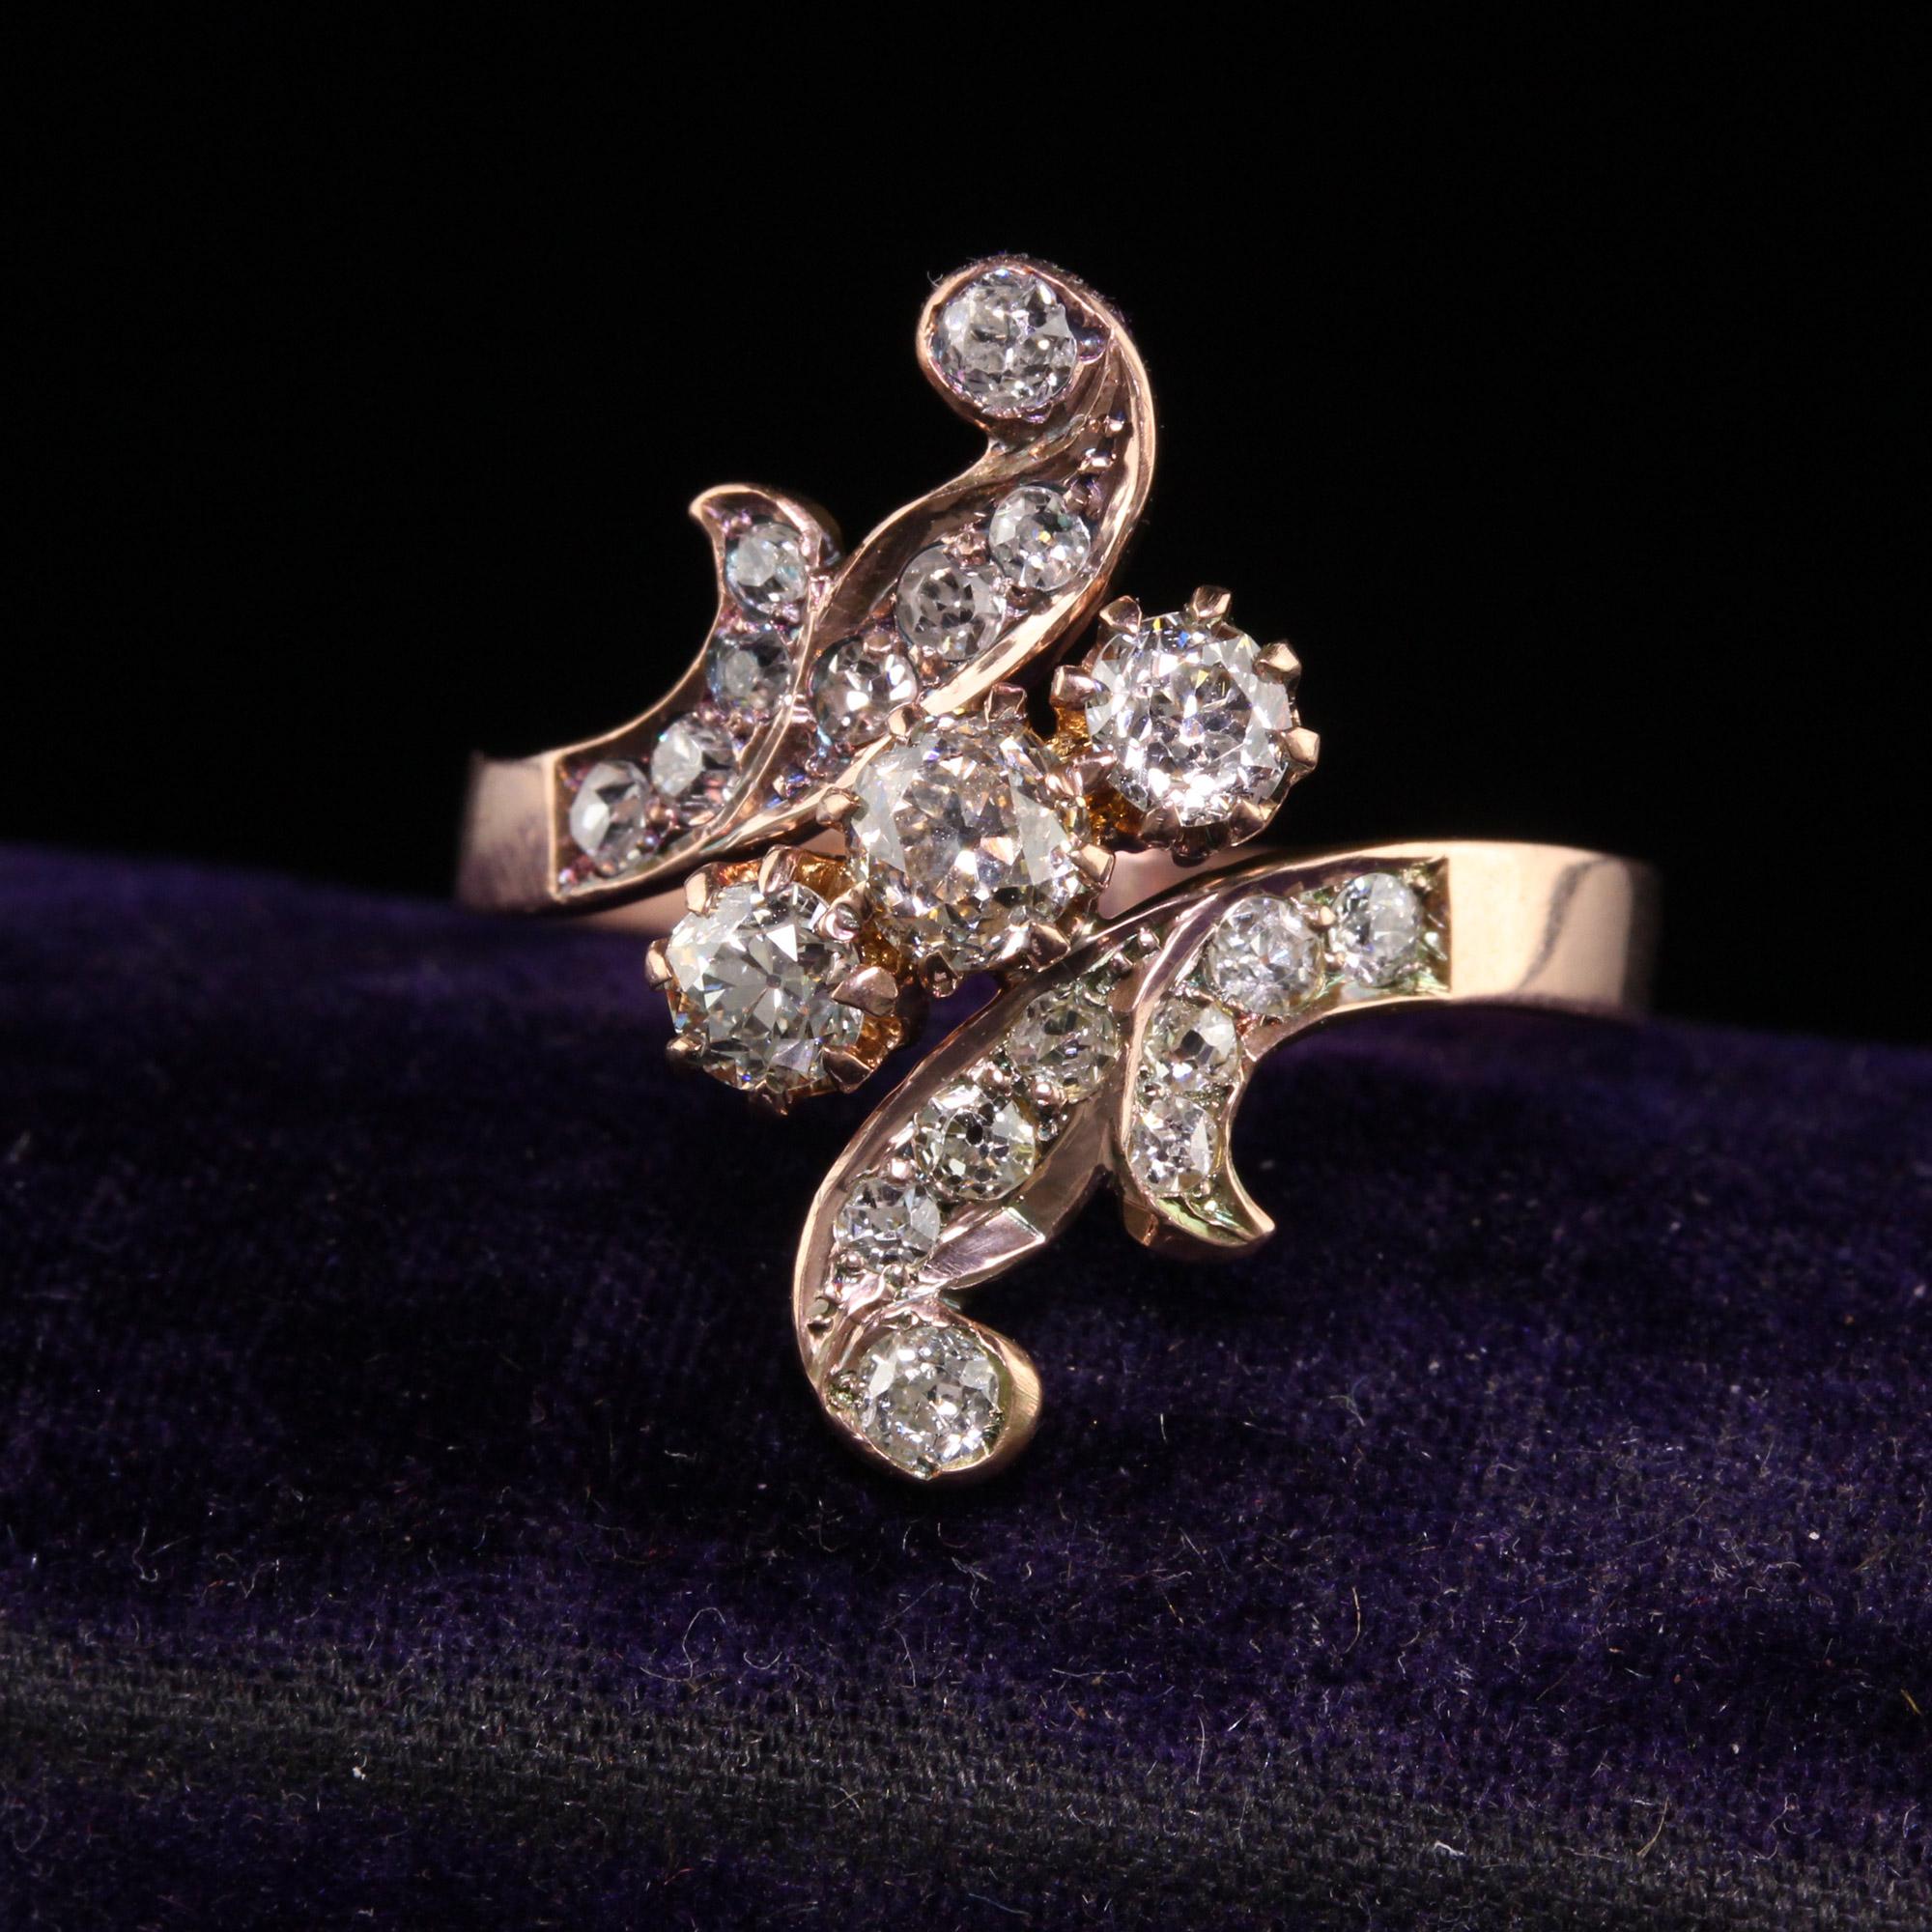 Schöne antike viktorianische 18K Rose Gold Old Mine Cut Diamond Floral Ring. Dieser schöne Ring ist aus 18 Karat Roségold gefertigt. Dieser schöne Ring ist mit Diamanten im Altminenschliff besetzt, die in das florale Muster eingefasst sind. Der Ring